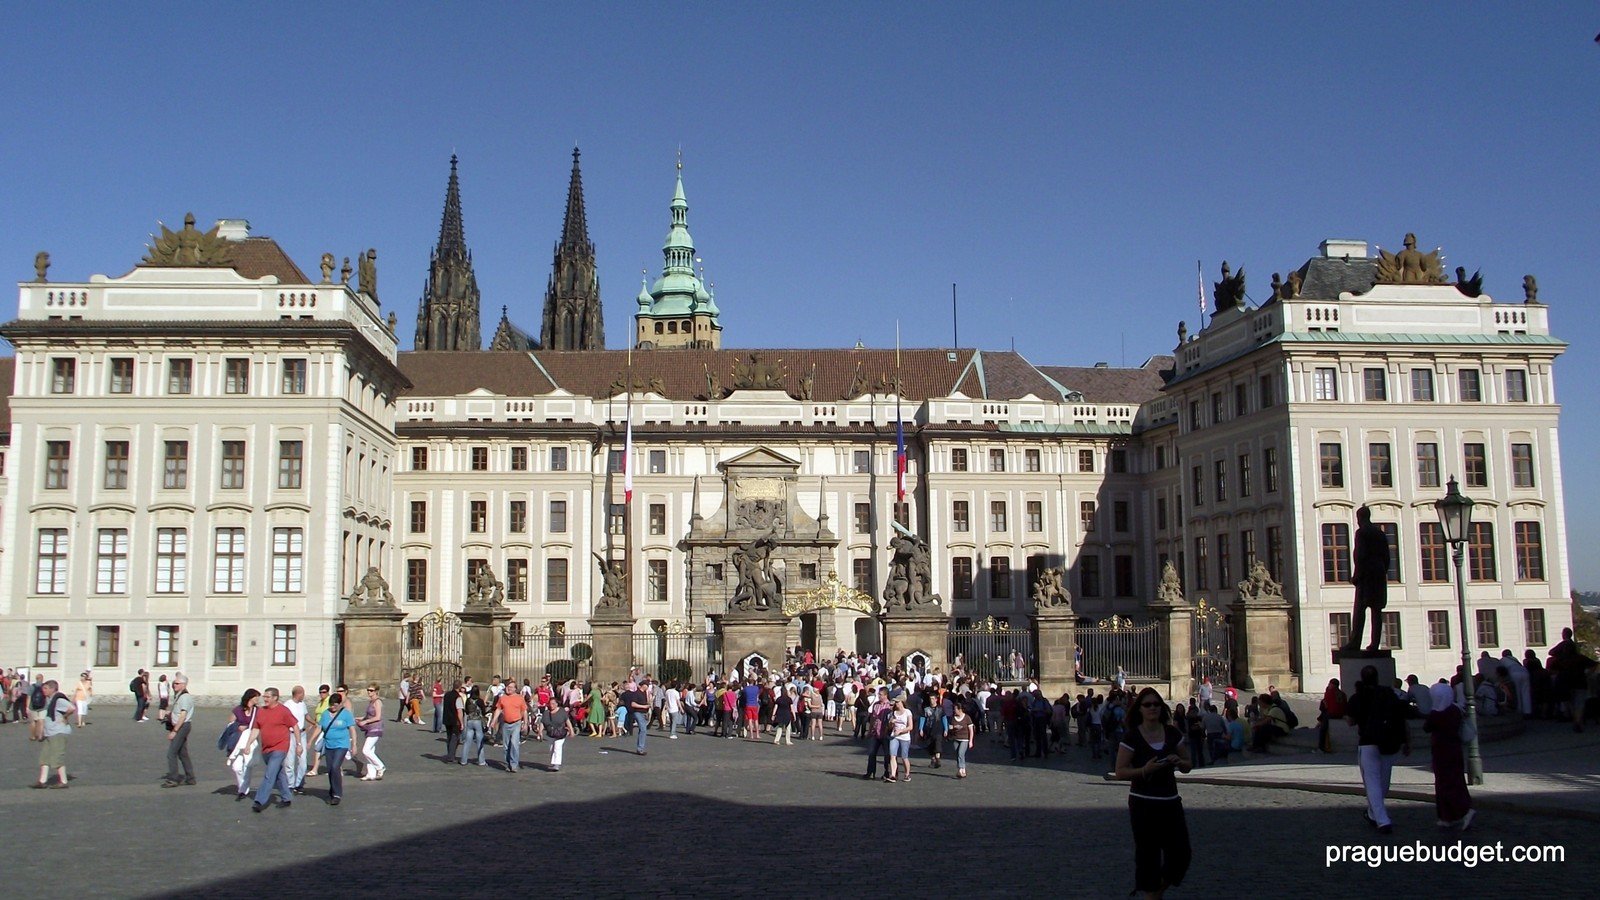 Prague Budget Tours